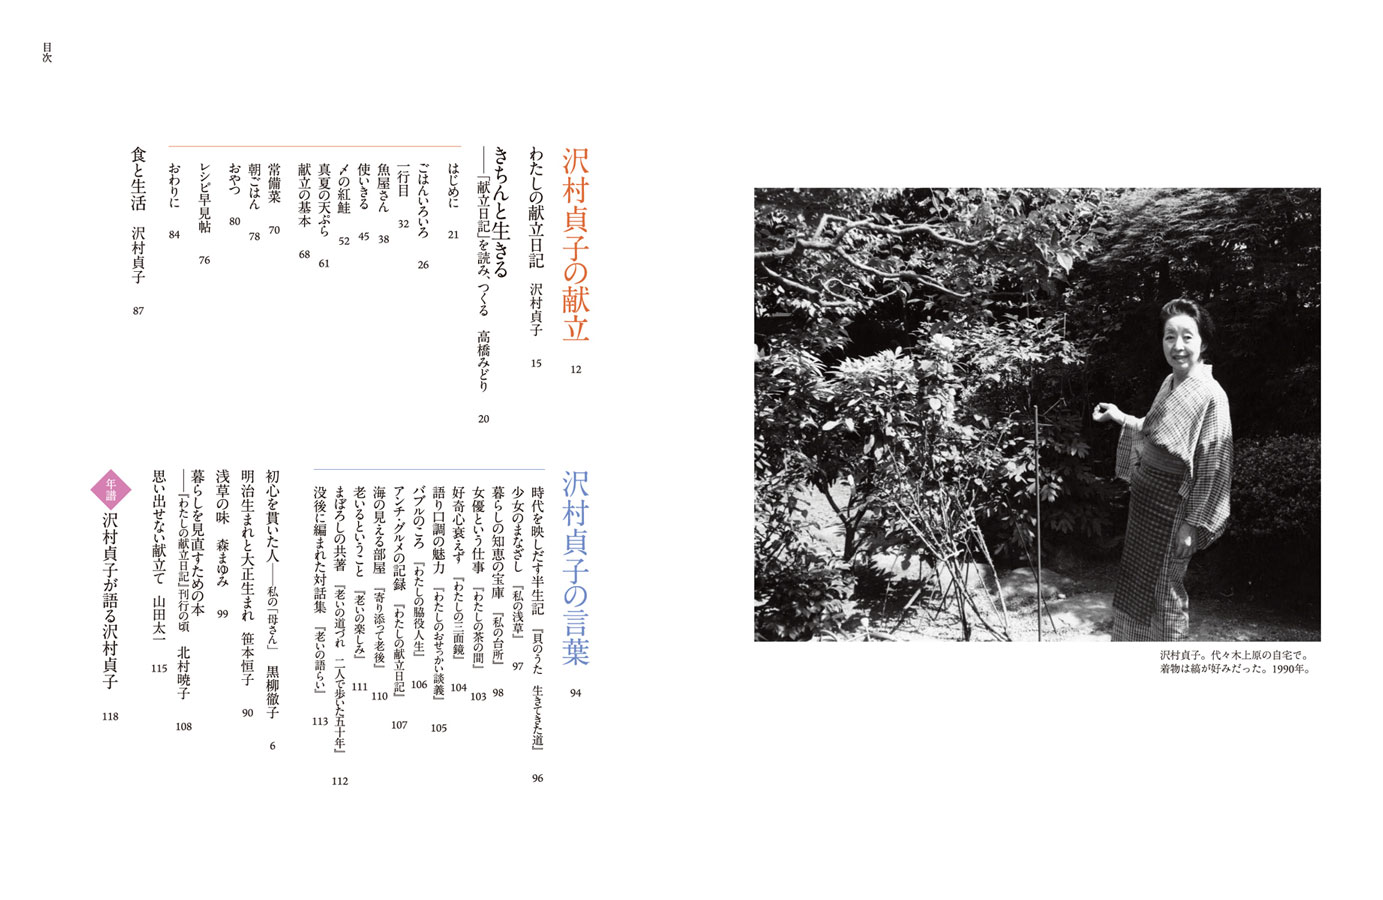 貞子 沢村 26年、36冊の献立日記…女優・沢村貞子が大切にした「身の丈に合った暮らし」